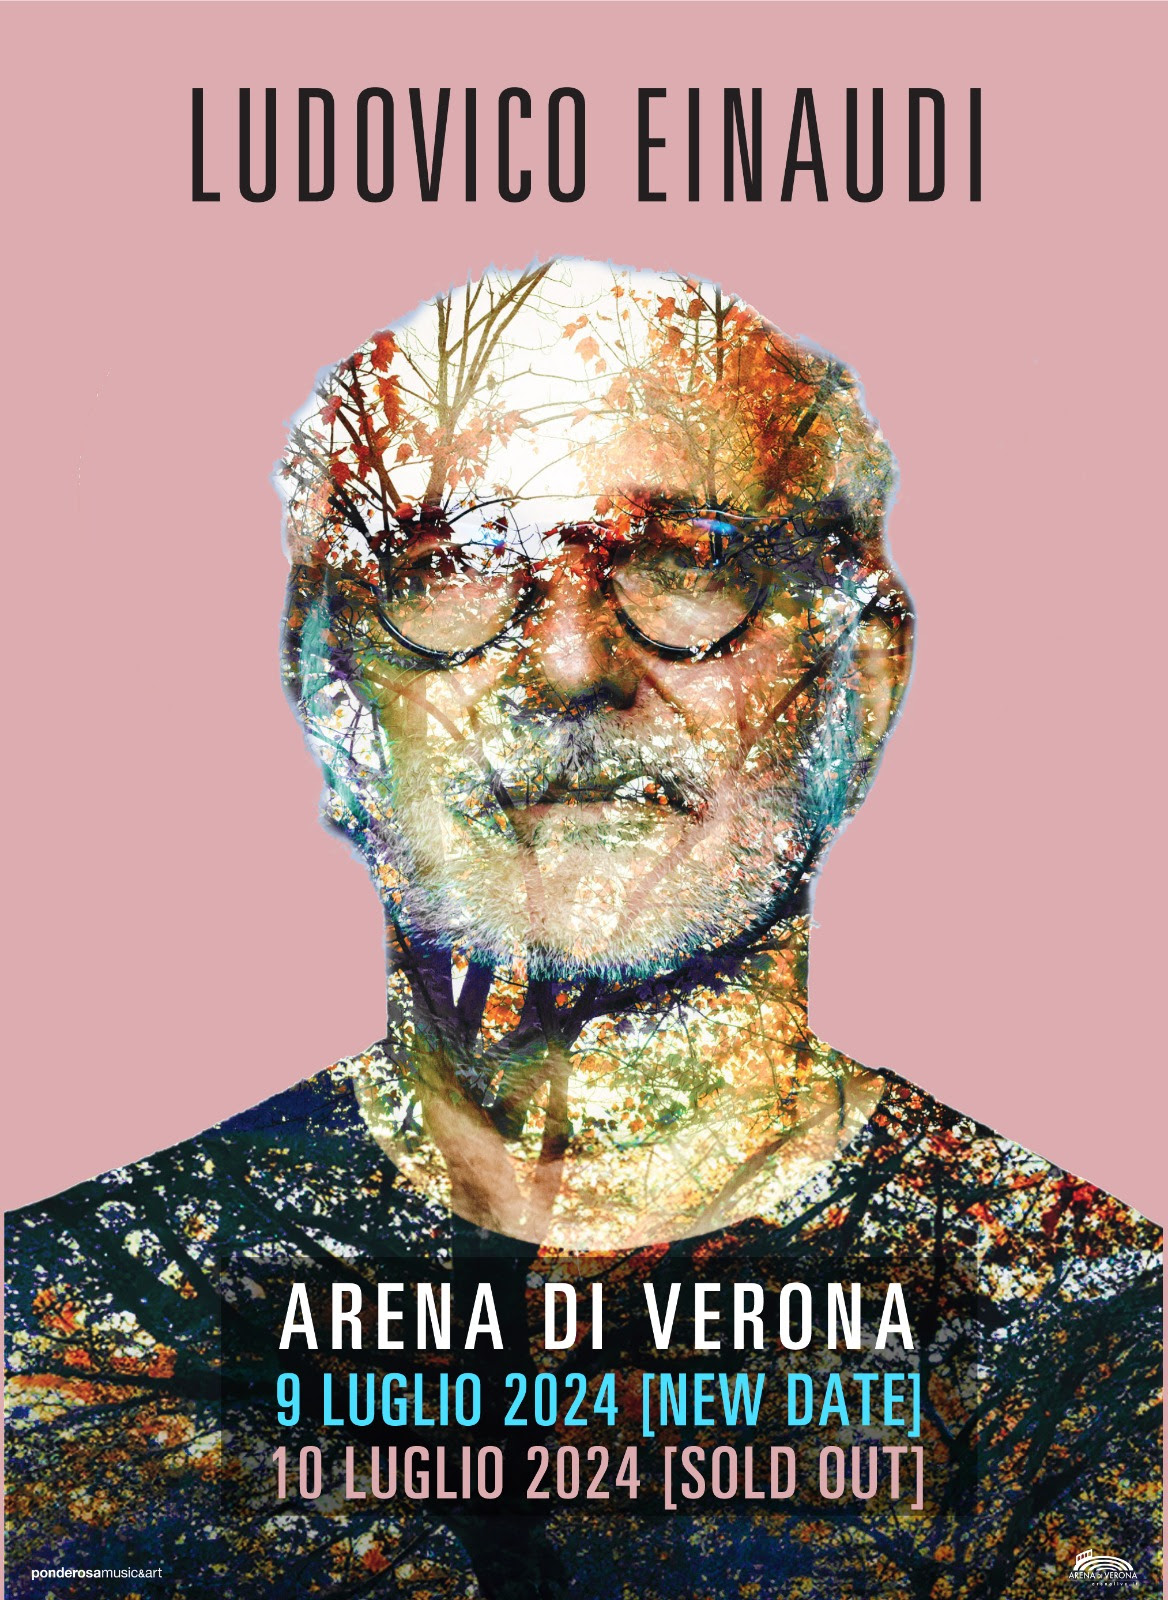 Ludovico Einaudi raddoppia all’Arena di Verona – sold out il 10 luglio, aggiunto nuovo concerto il 9 luglio